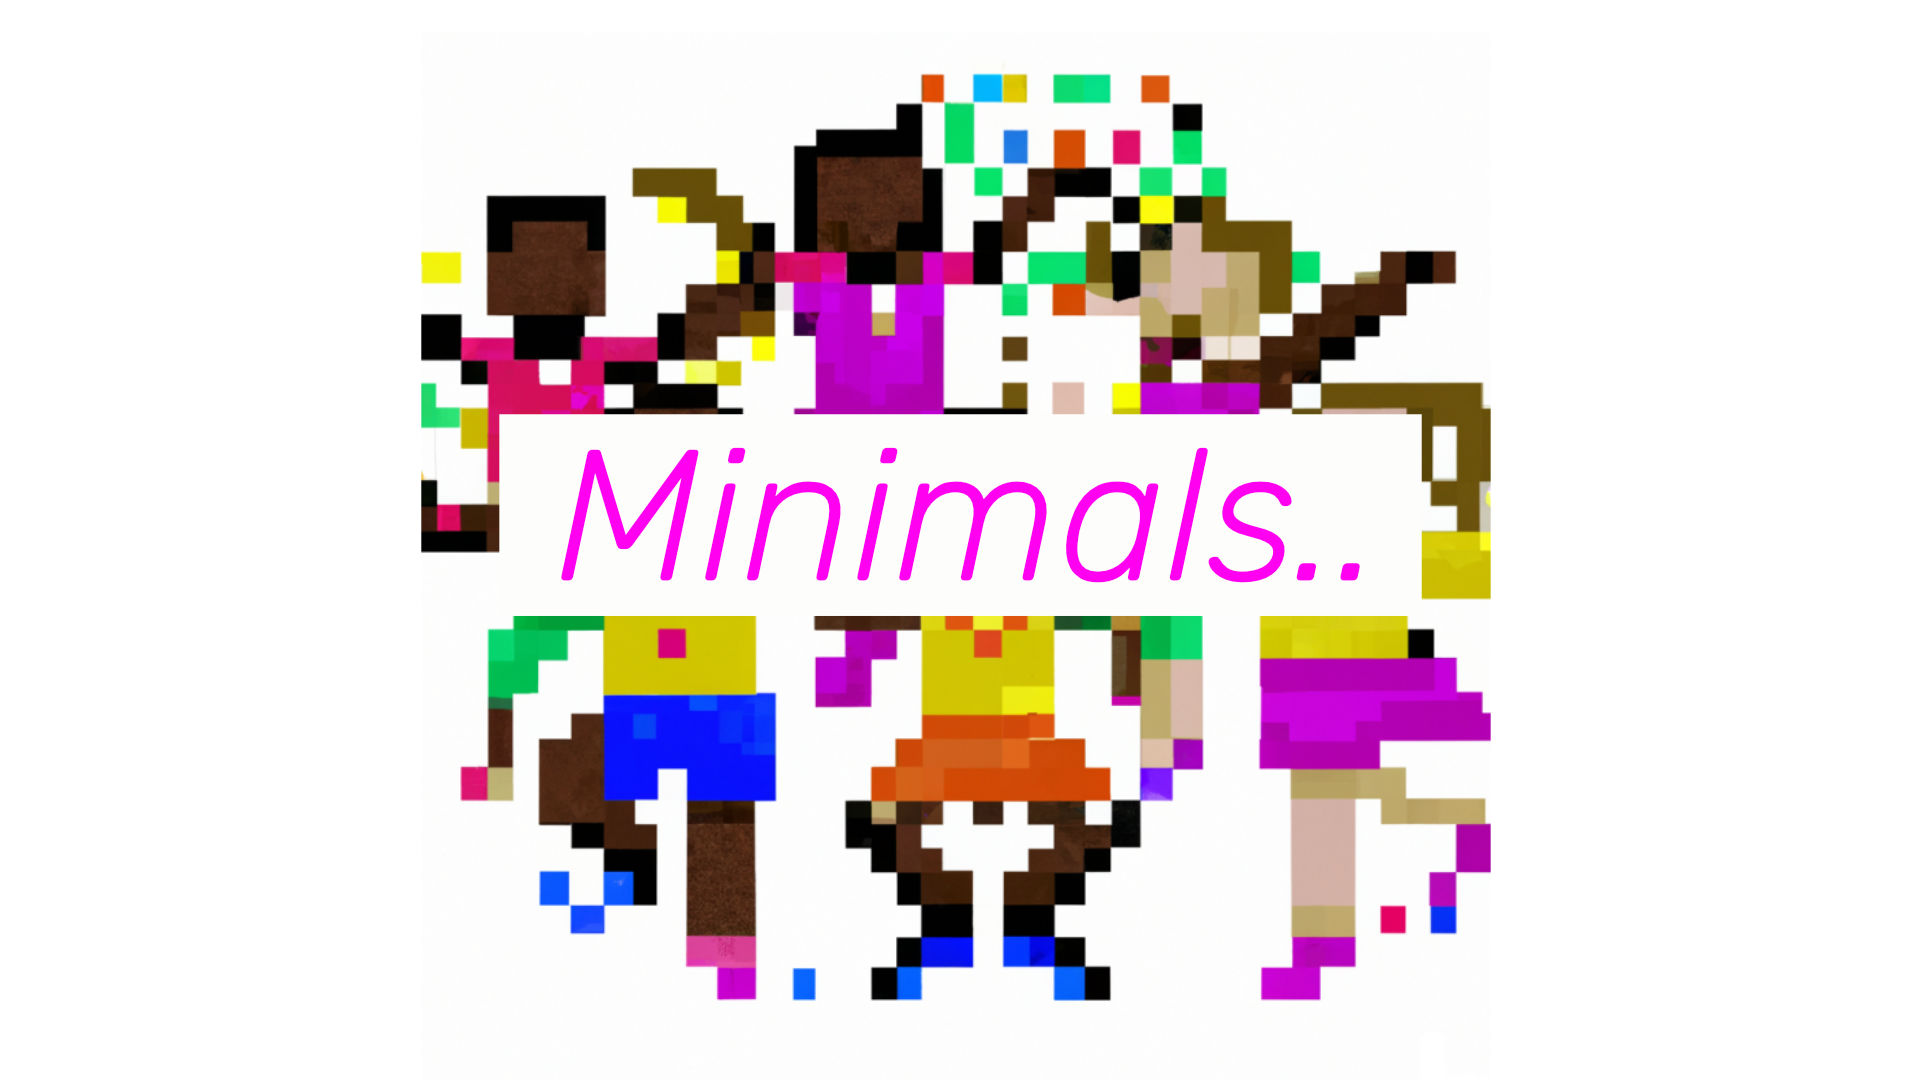 Pixelated children dancing around a playground behind the word Minimals.